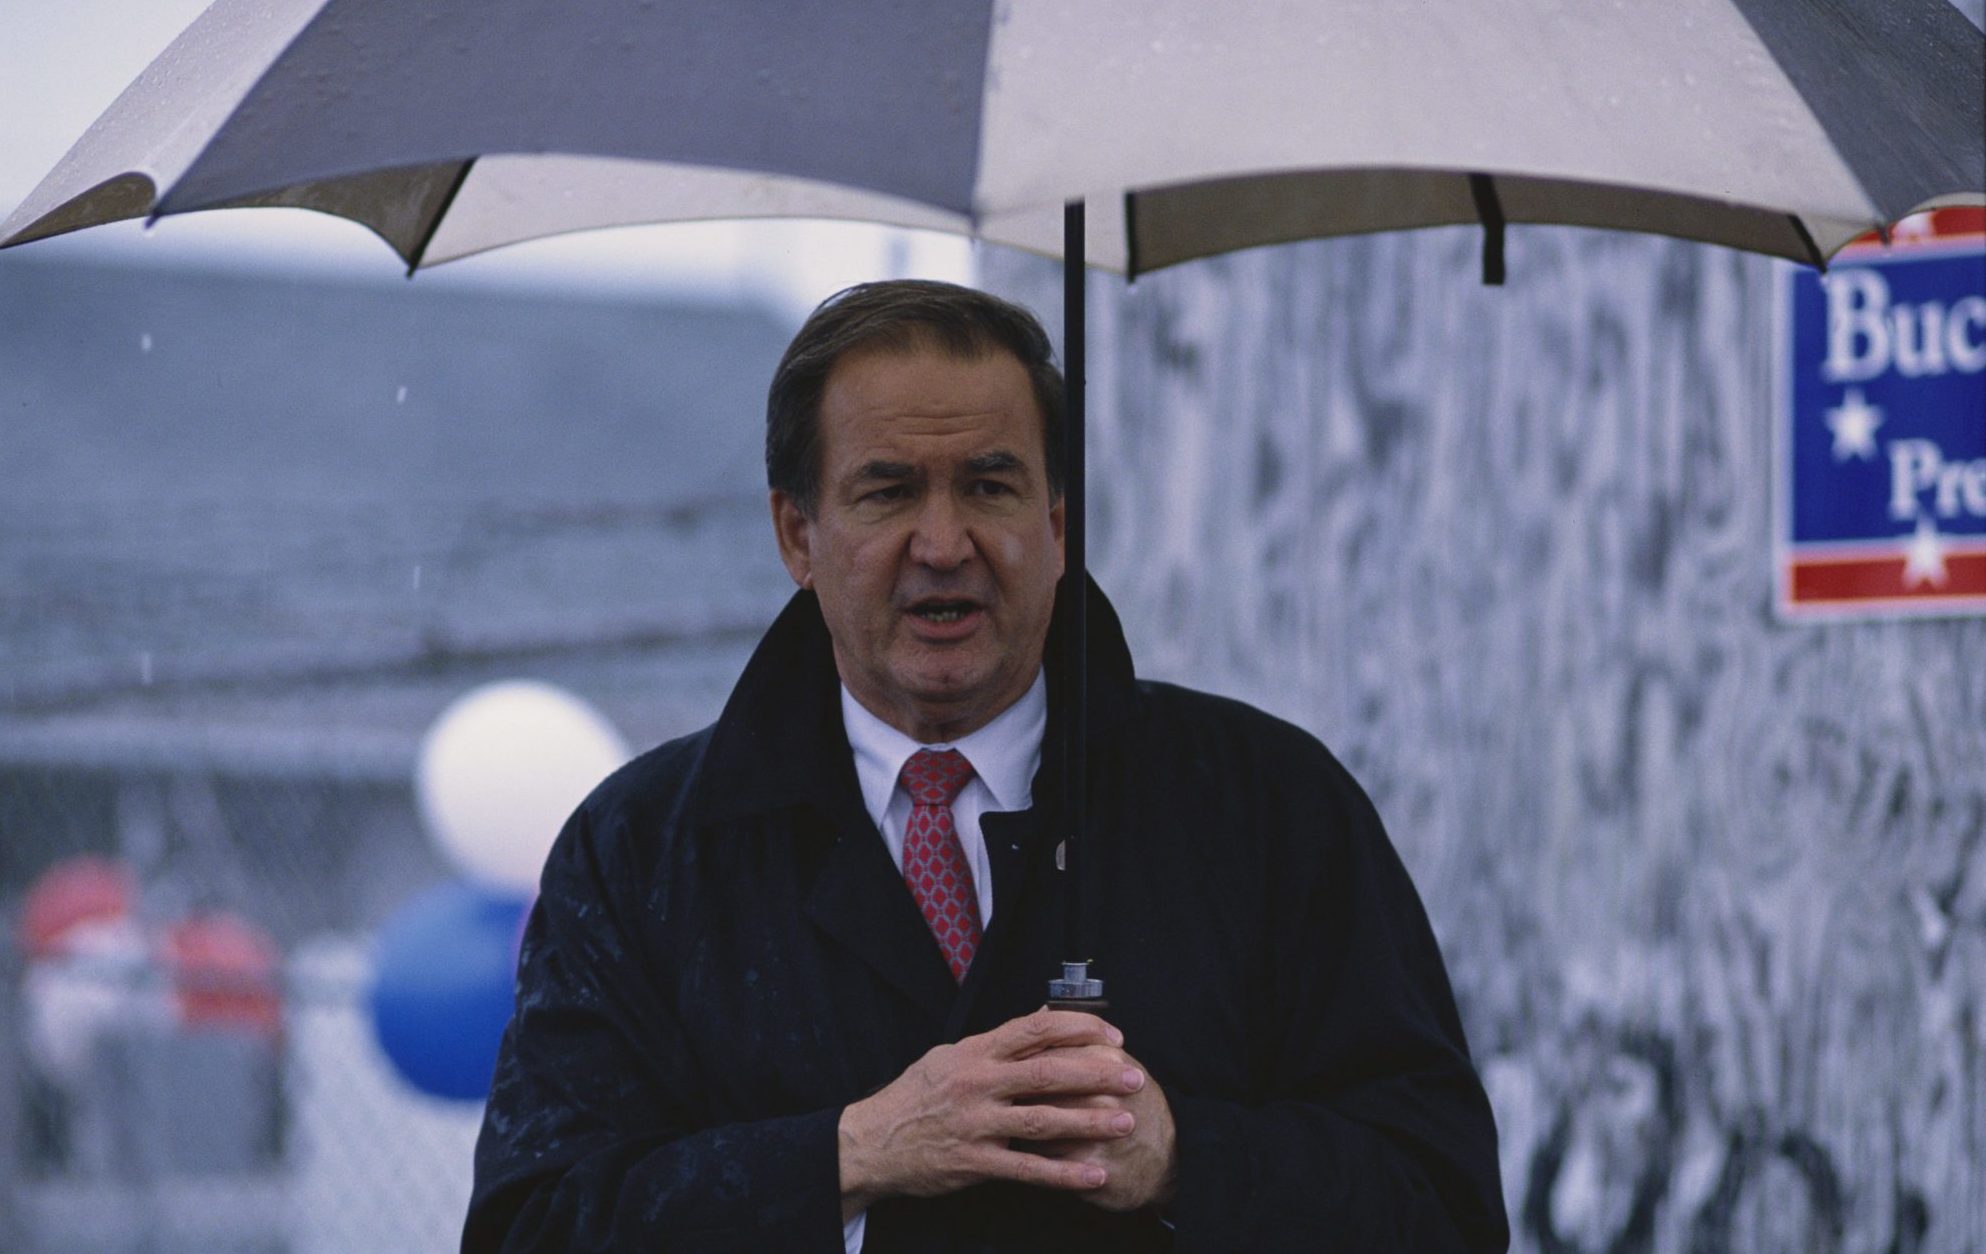 Pat Buchanan Holding Umbrella at a Rally